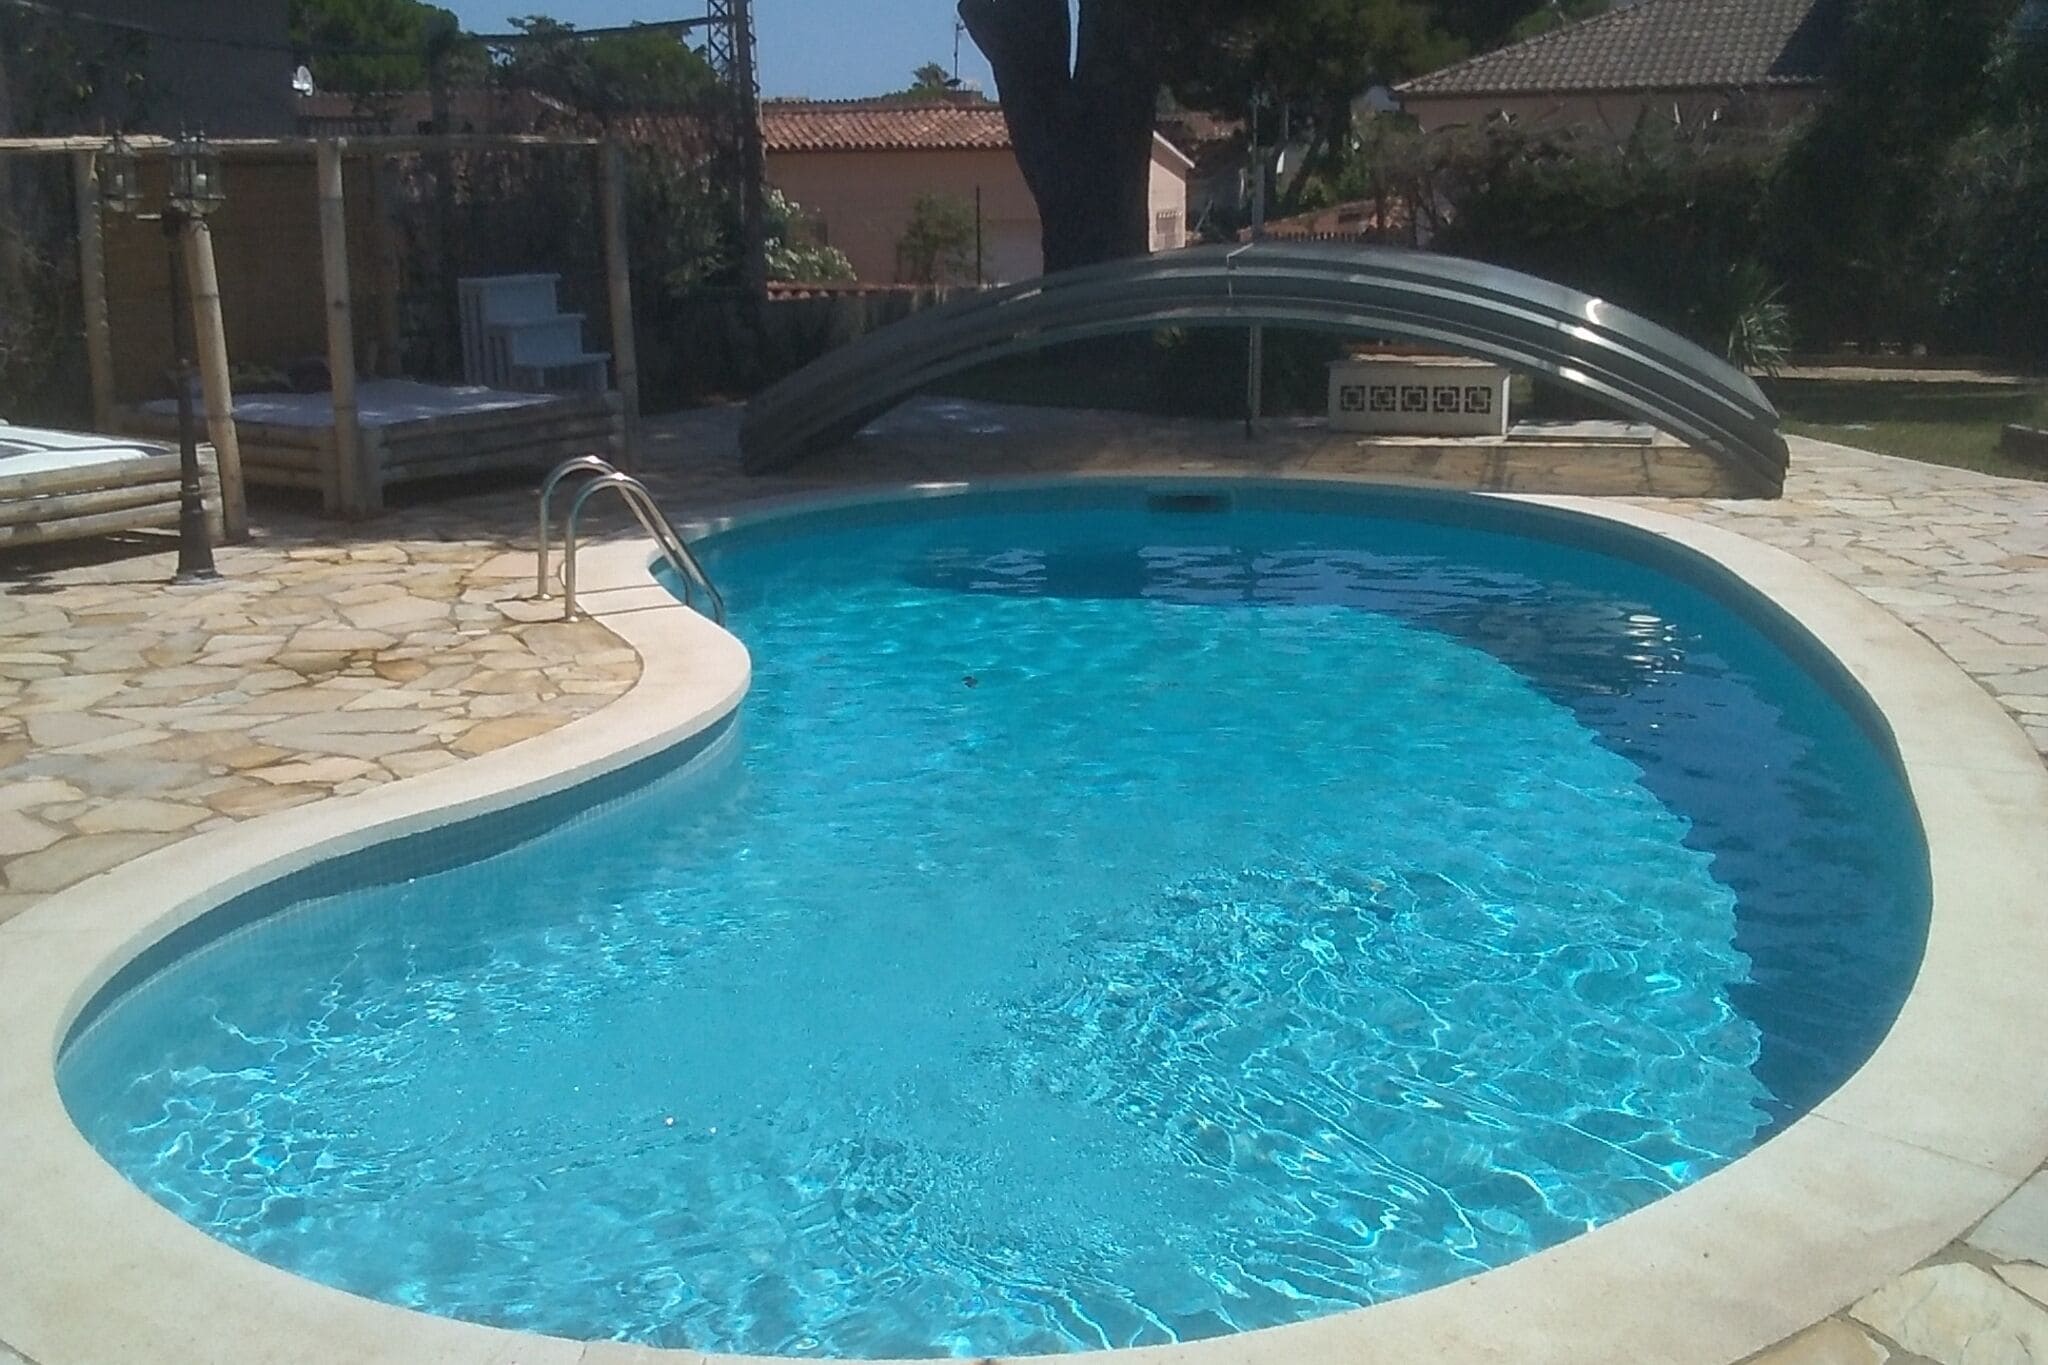 Maison de vacances à Sant Antoni de Calonge, avec piscine.